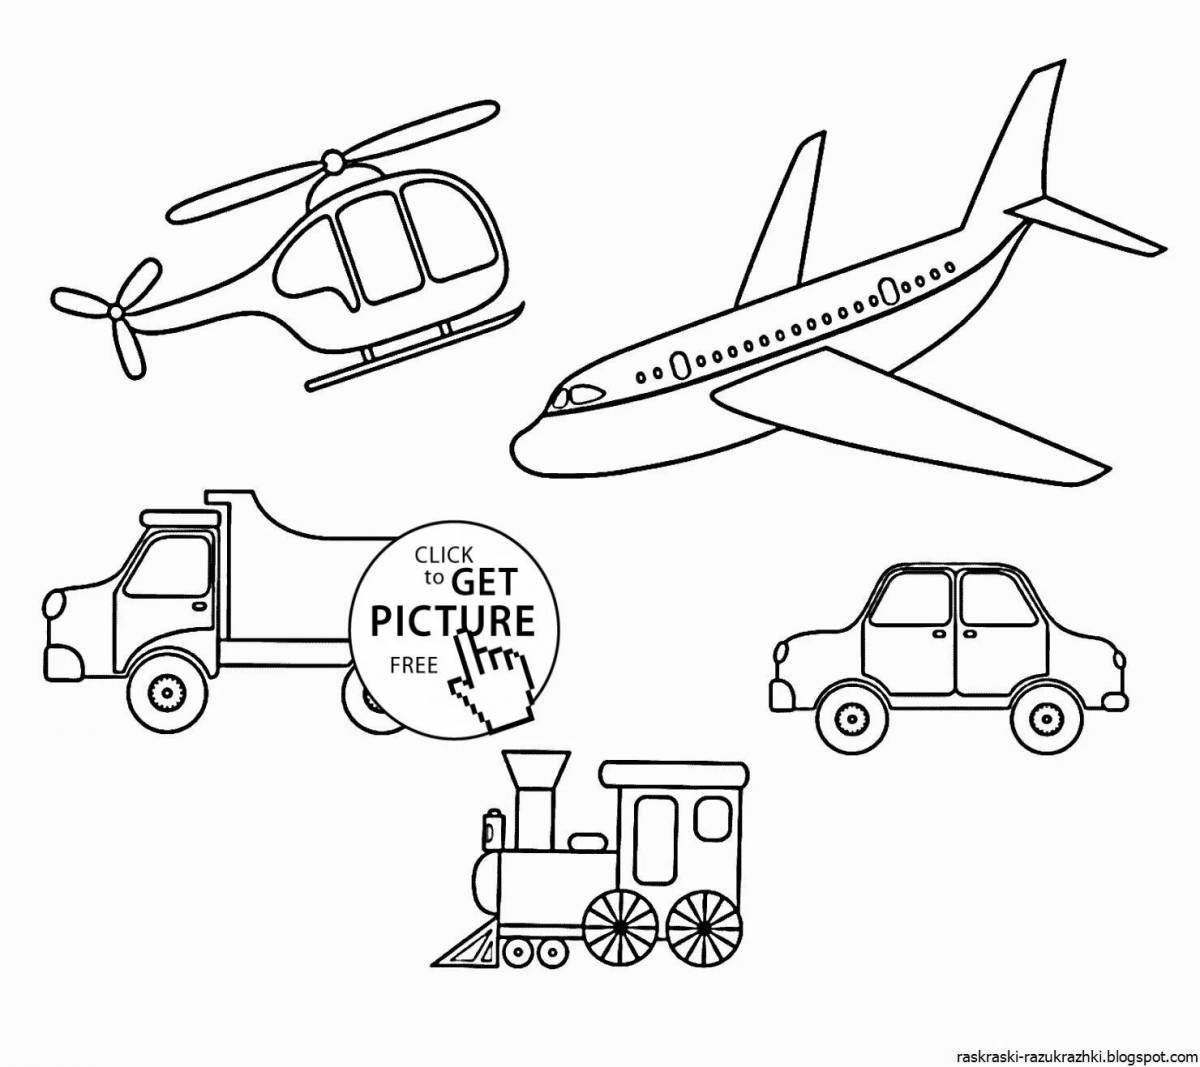 Выдающаяся раскраска воздушного транспорта для детей 6-7 лет